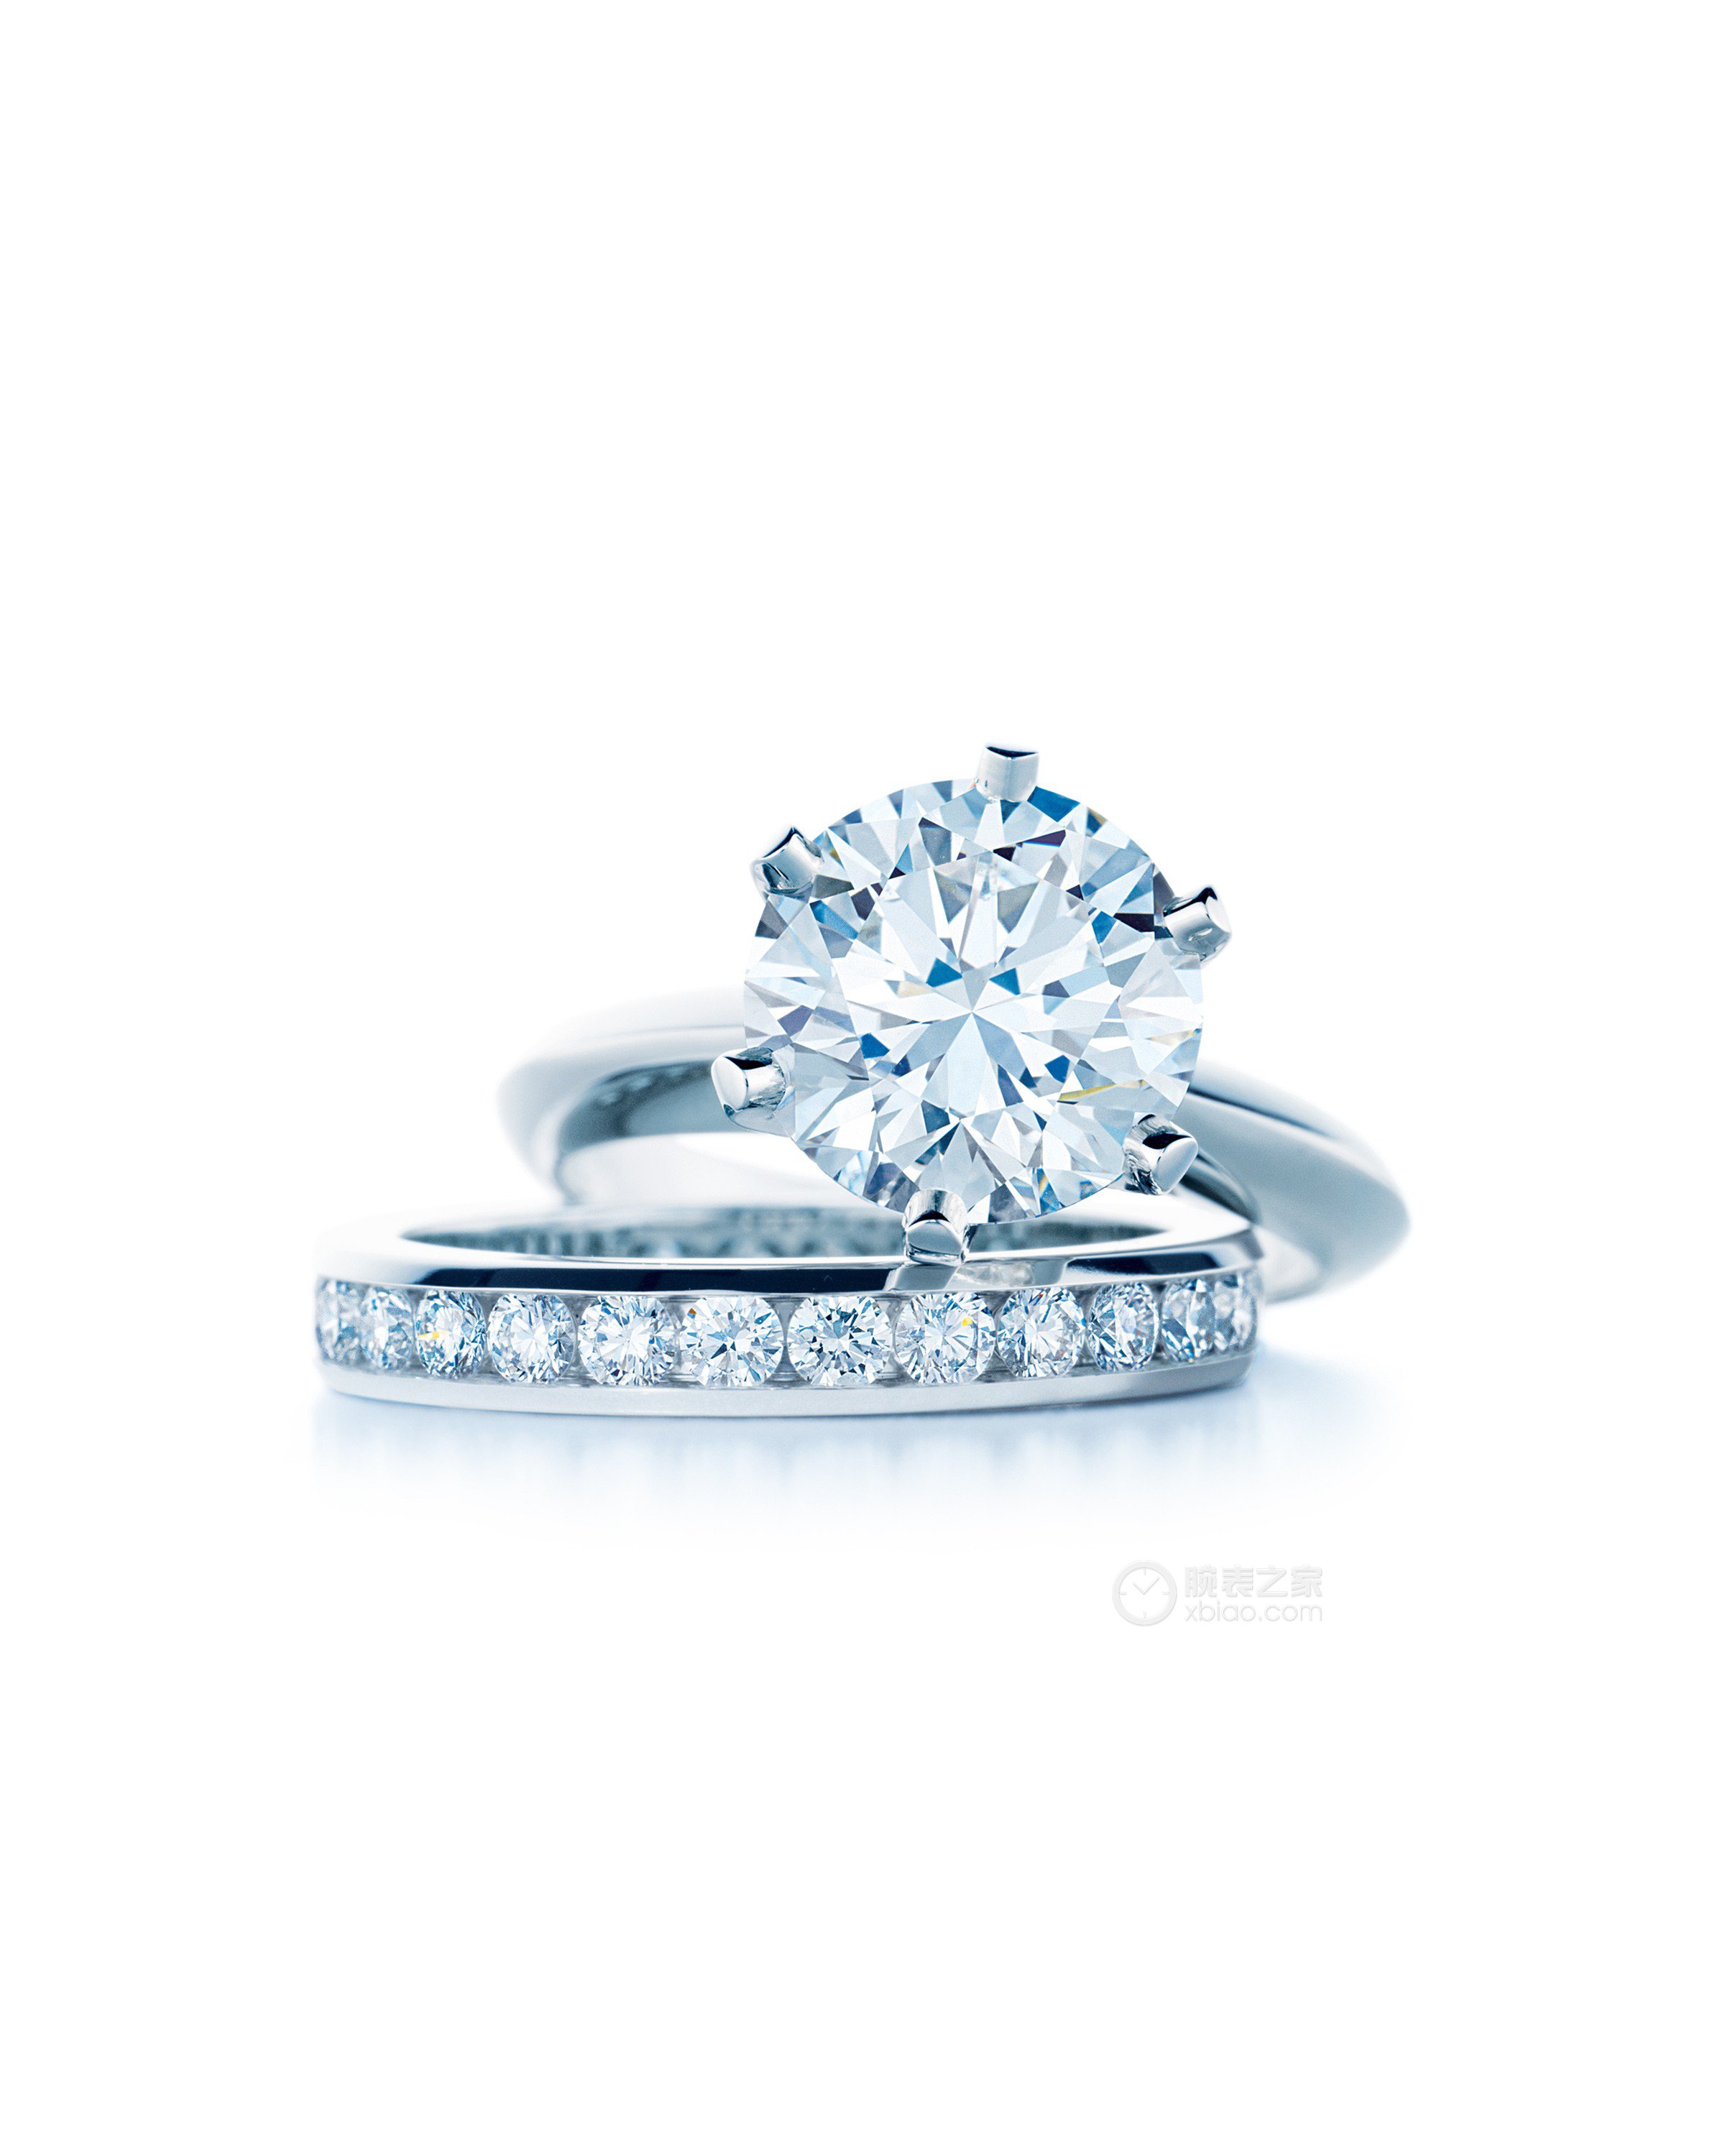 高清图|蒂芙尼铂金镶嵌圆形明亮式钻石及混合七个钻石戒指戒指图片2|腕表之家-珠宝